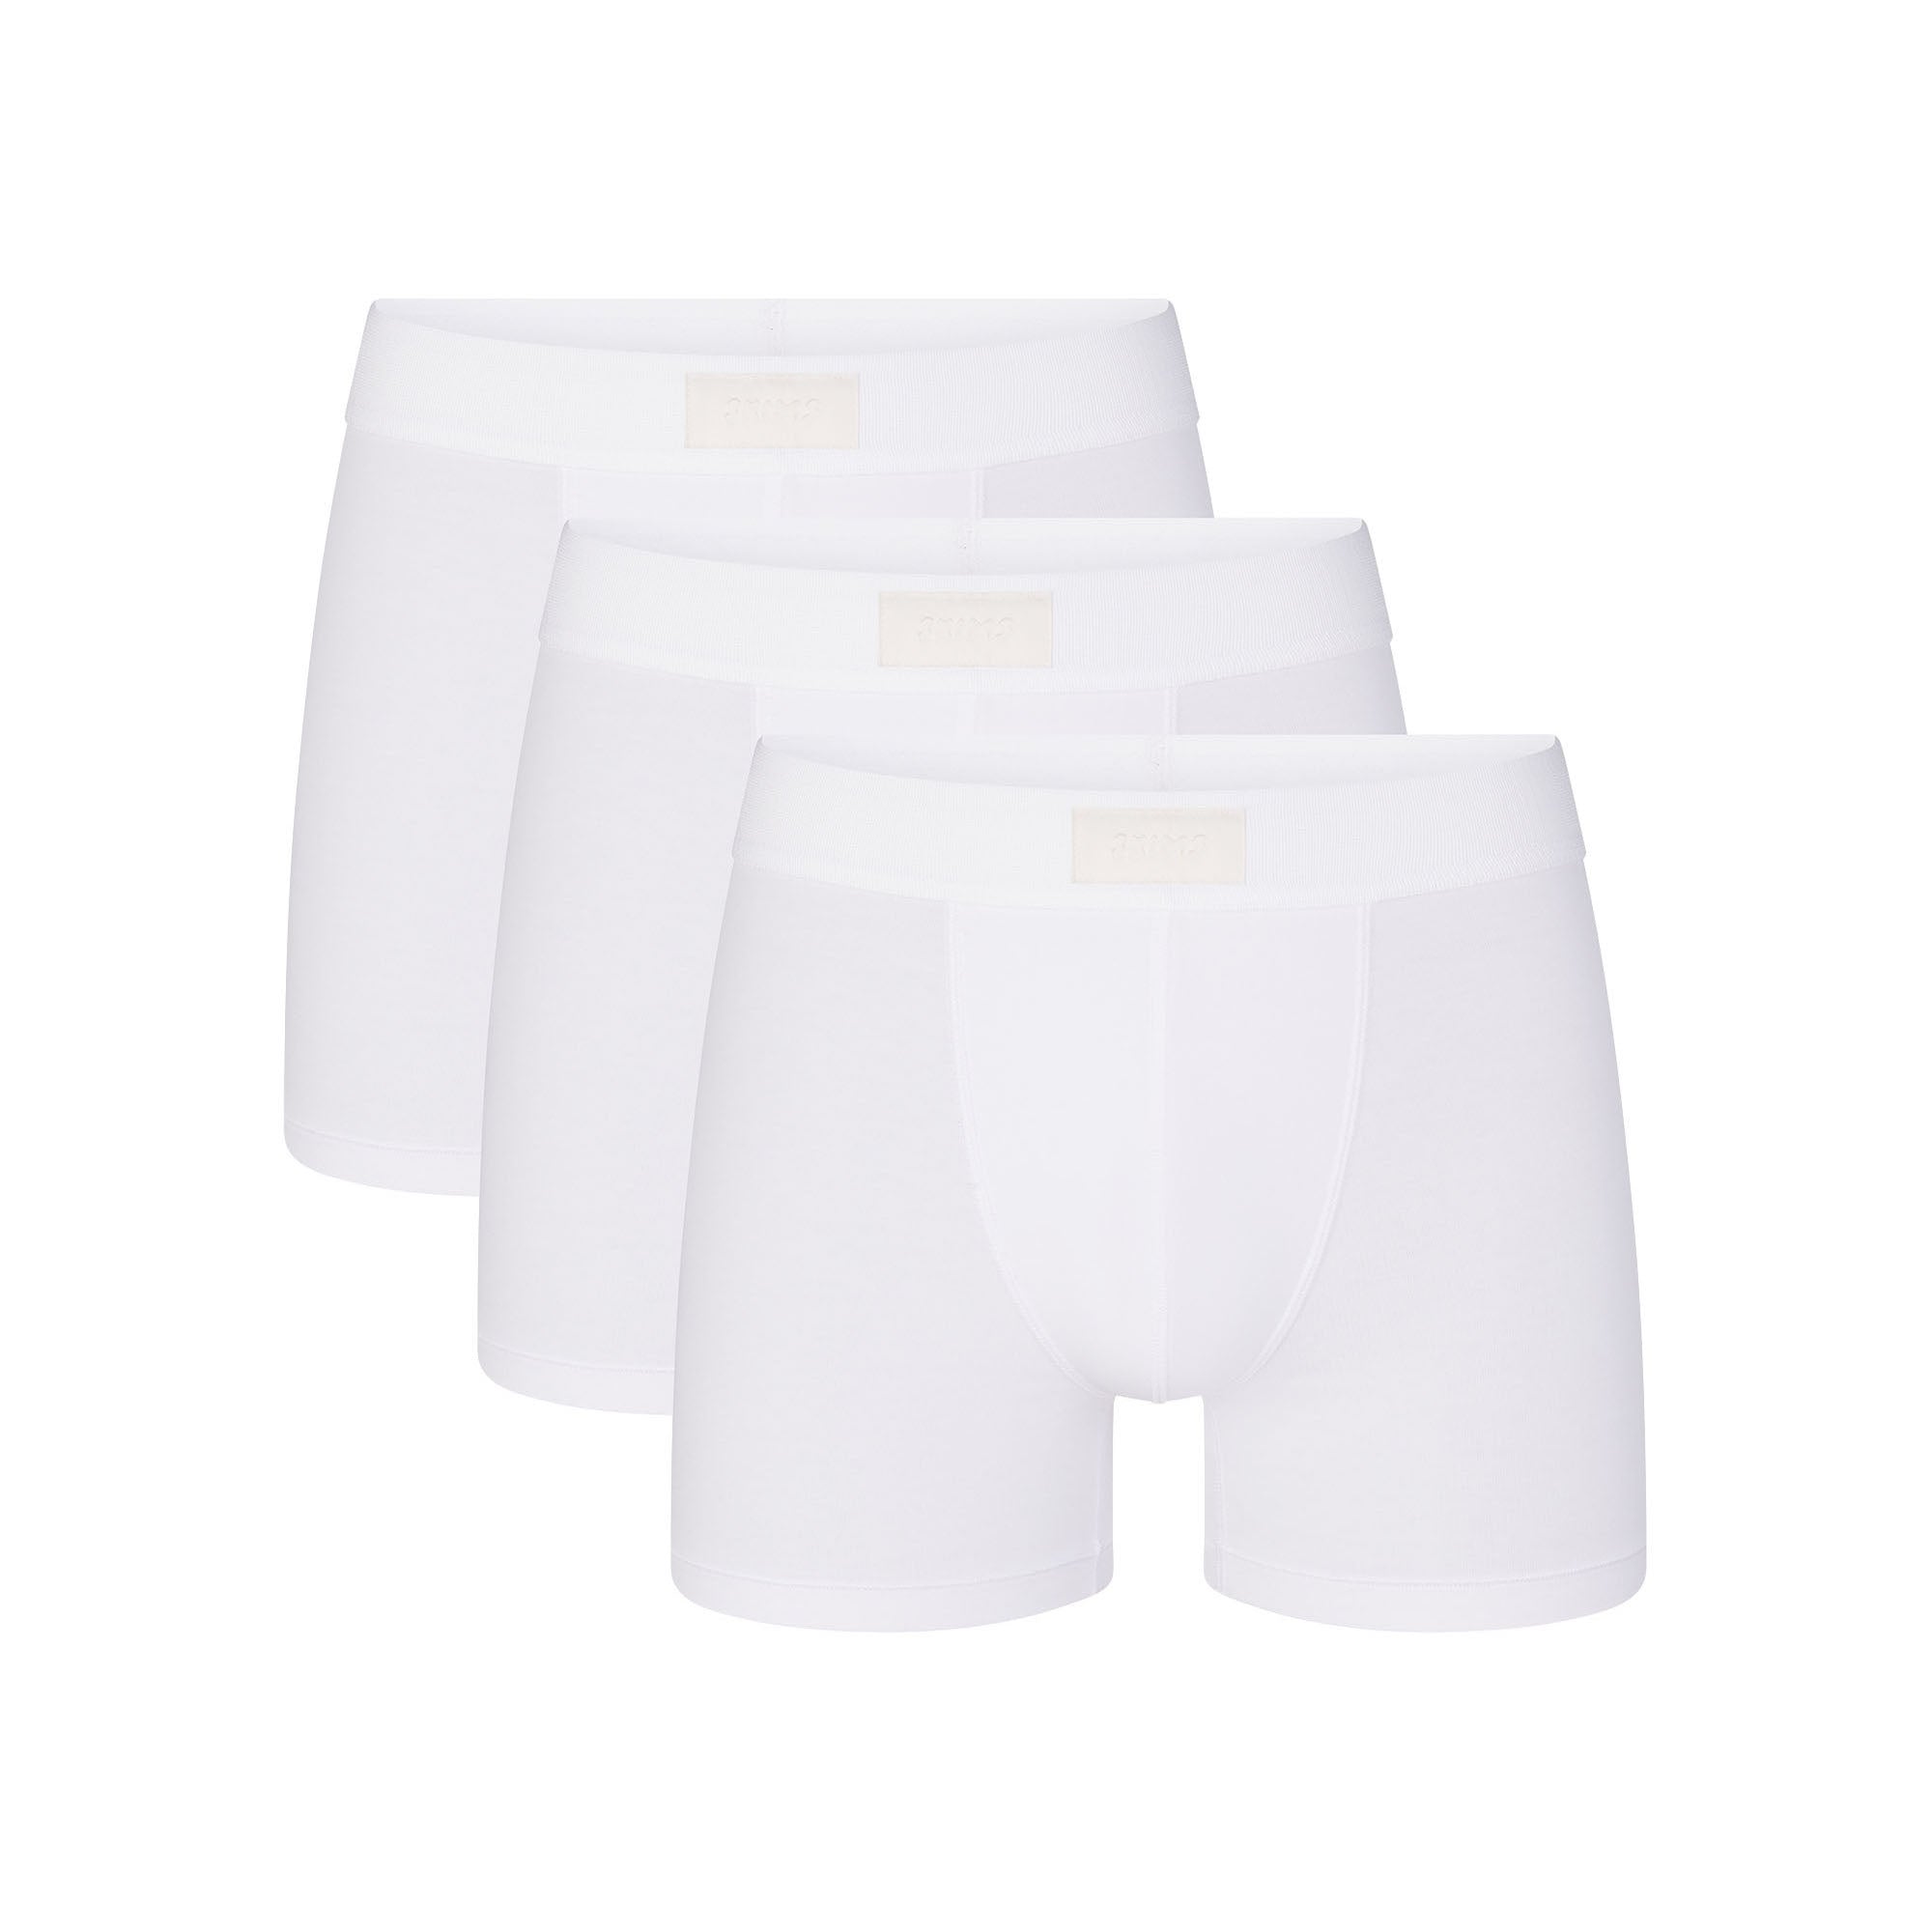 DORKASM Men's Underwear Boxer Briefs on Sale or Clearance 3 Pack Moisture  Wicking with Pouch Underwear Sexy Briefs L White 